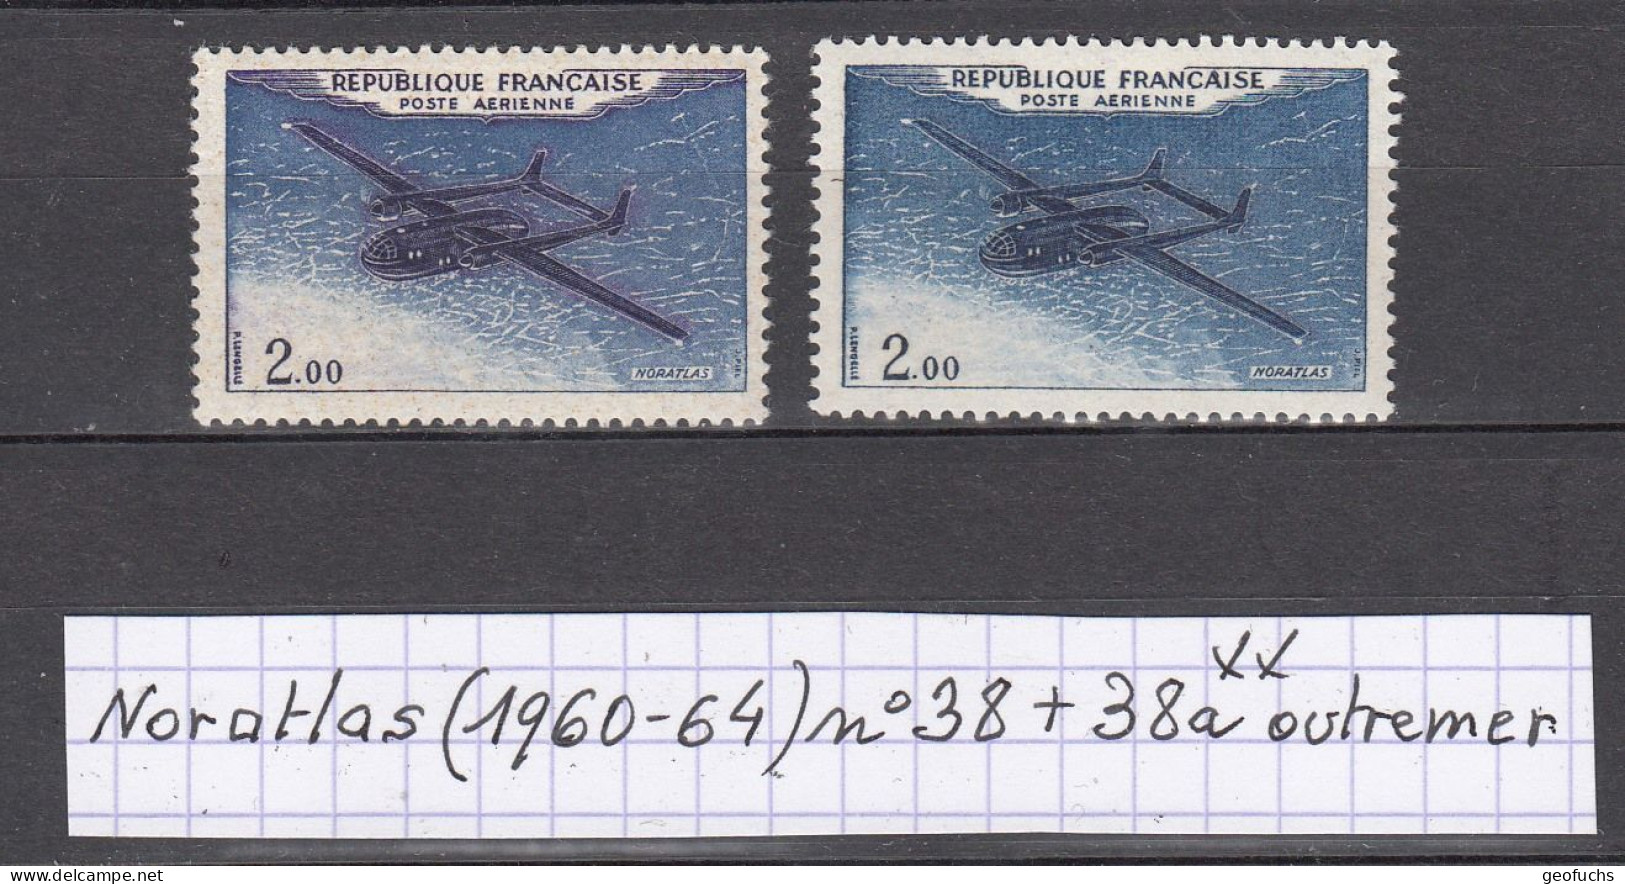 France Prototypes Noratlas (1960-64) Poste Aérienne Y/T Variété N° 38 + 38a (outremer) Neufs ** - Nuevos